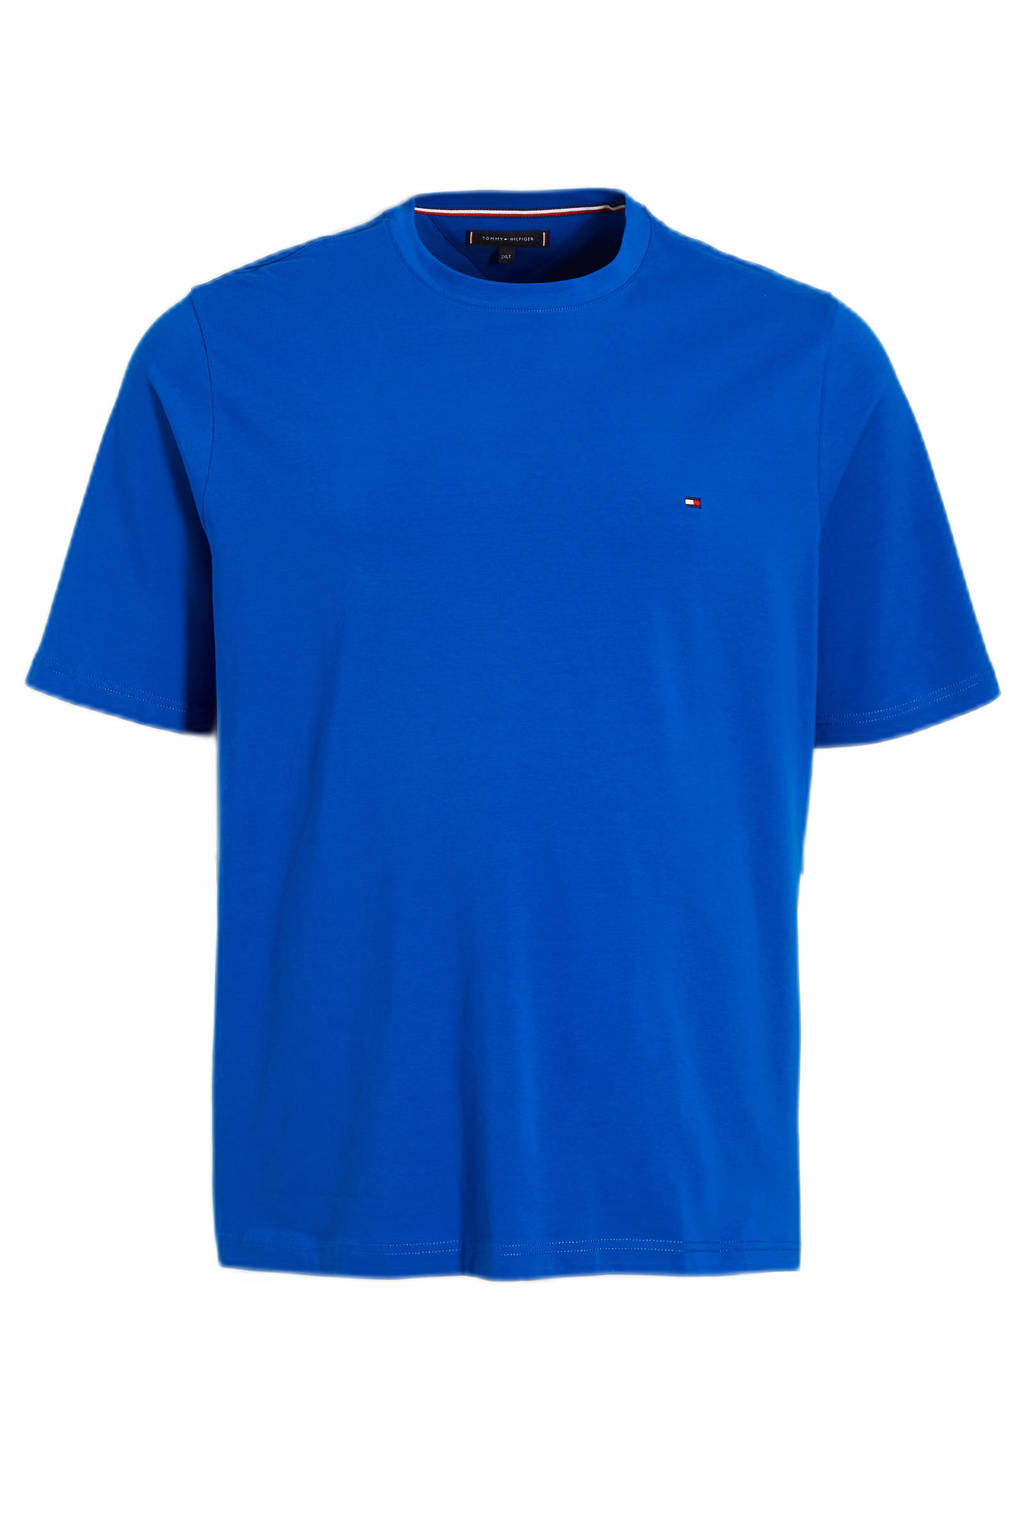 Tommy Hilfiger Big & Tall T-shirt Plus Size greek isle blue